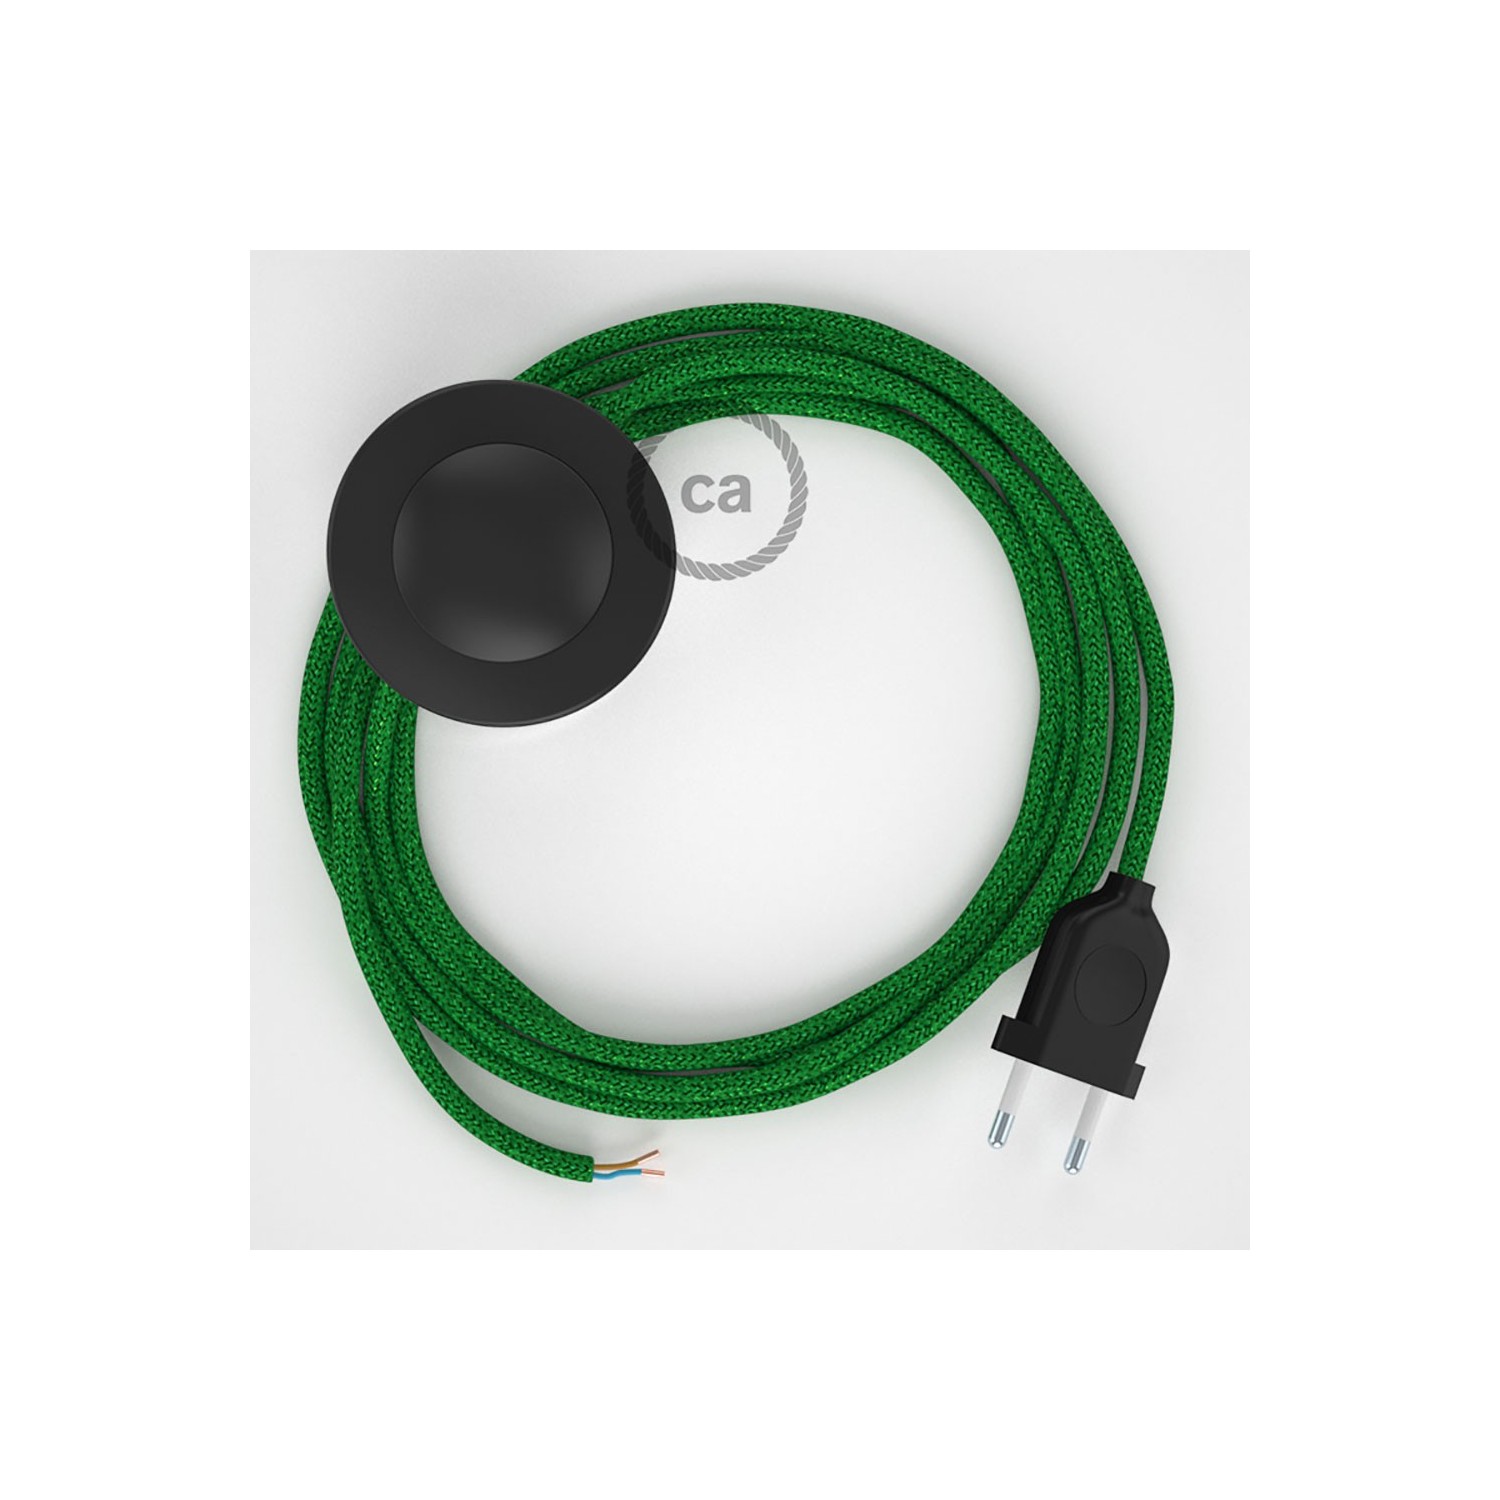 Sladdställ med fotströmbrytare, RL06 Grön Viskos 3 m. Välj färg på strömbrytare och kontakt